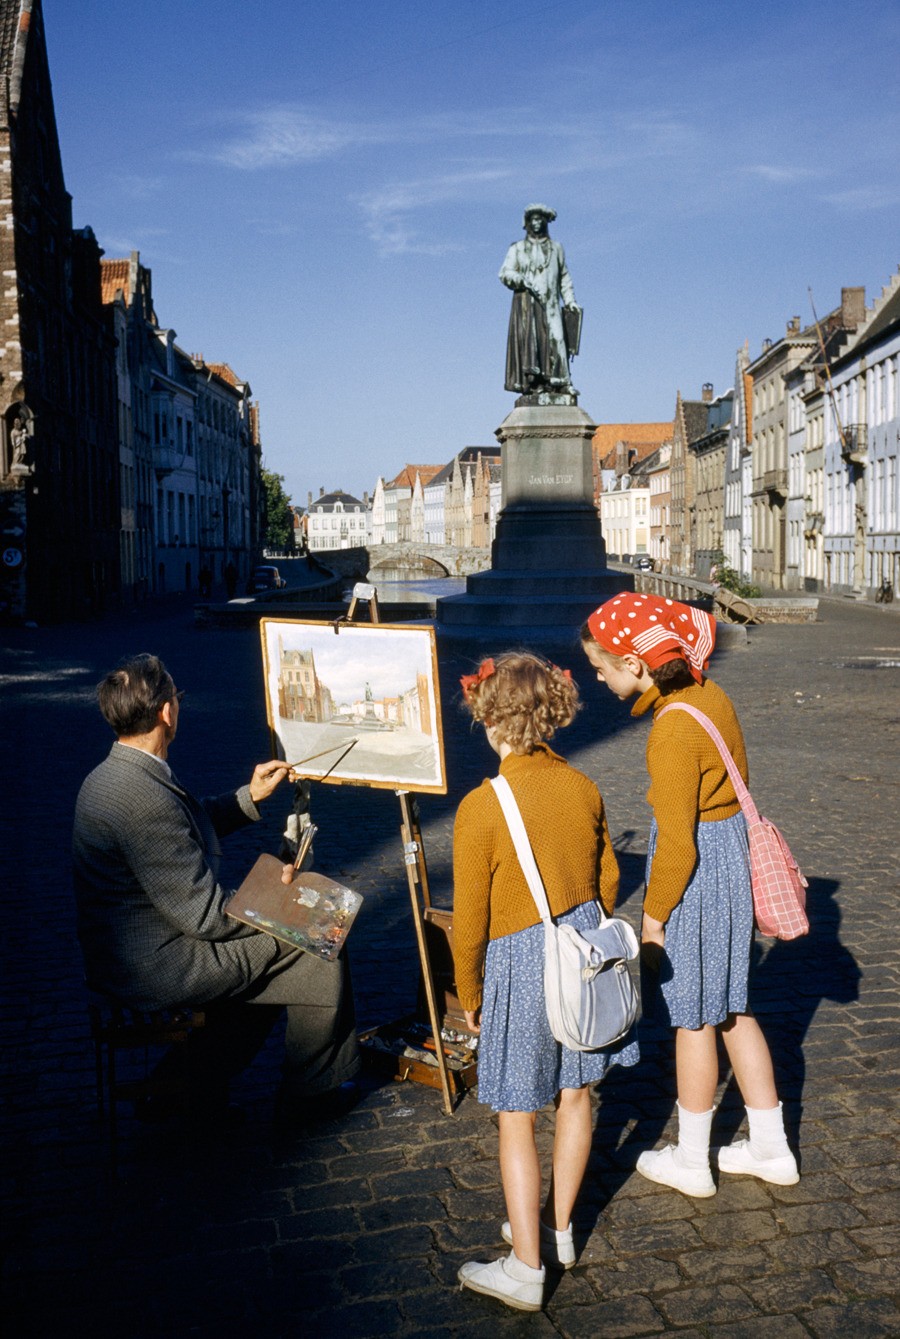 Художник пишет статую фламандского живописца в Брюгге, Бельгия, 1955. Фотограф Луис Марден